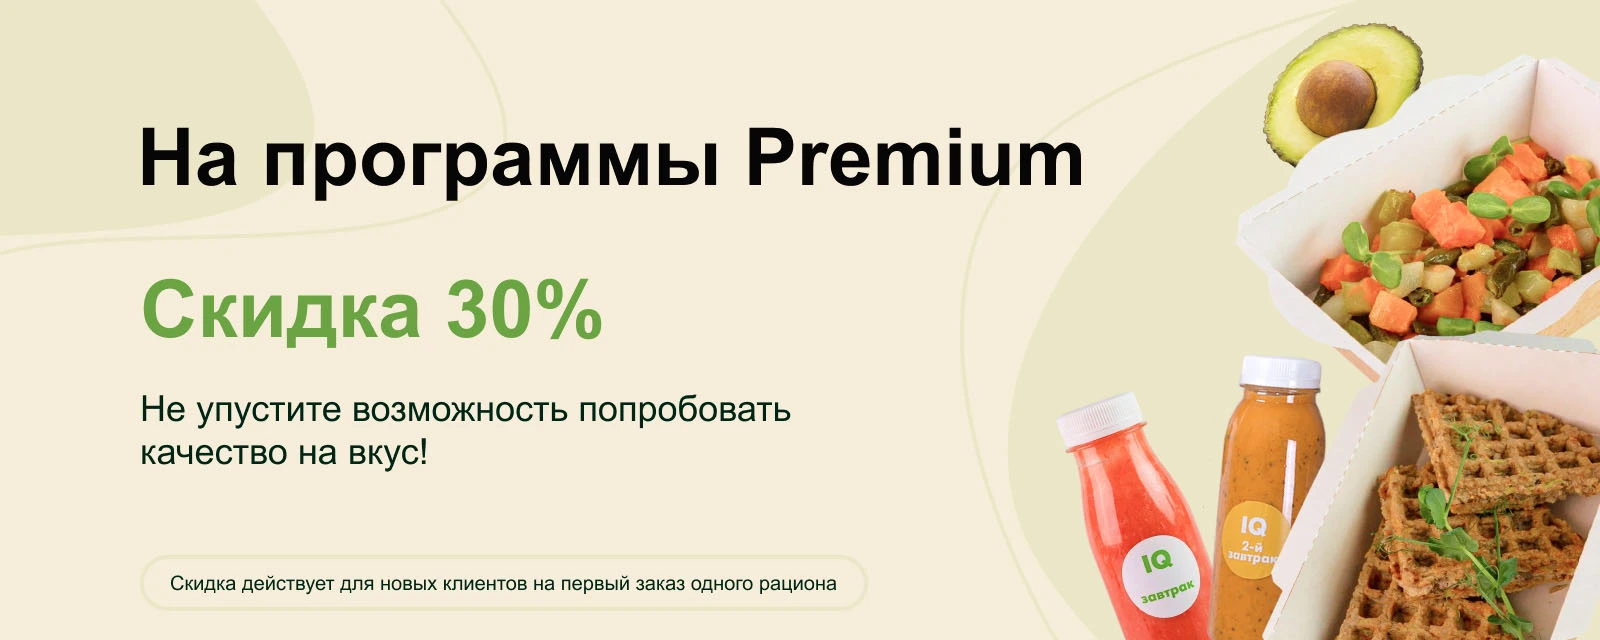 Скидка 30% на программы Premium